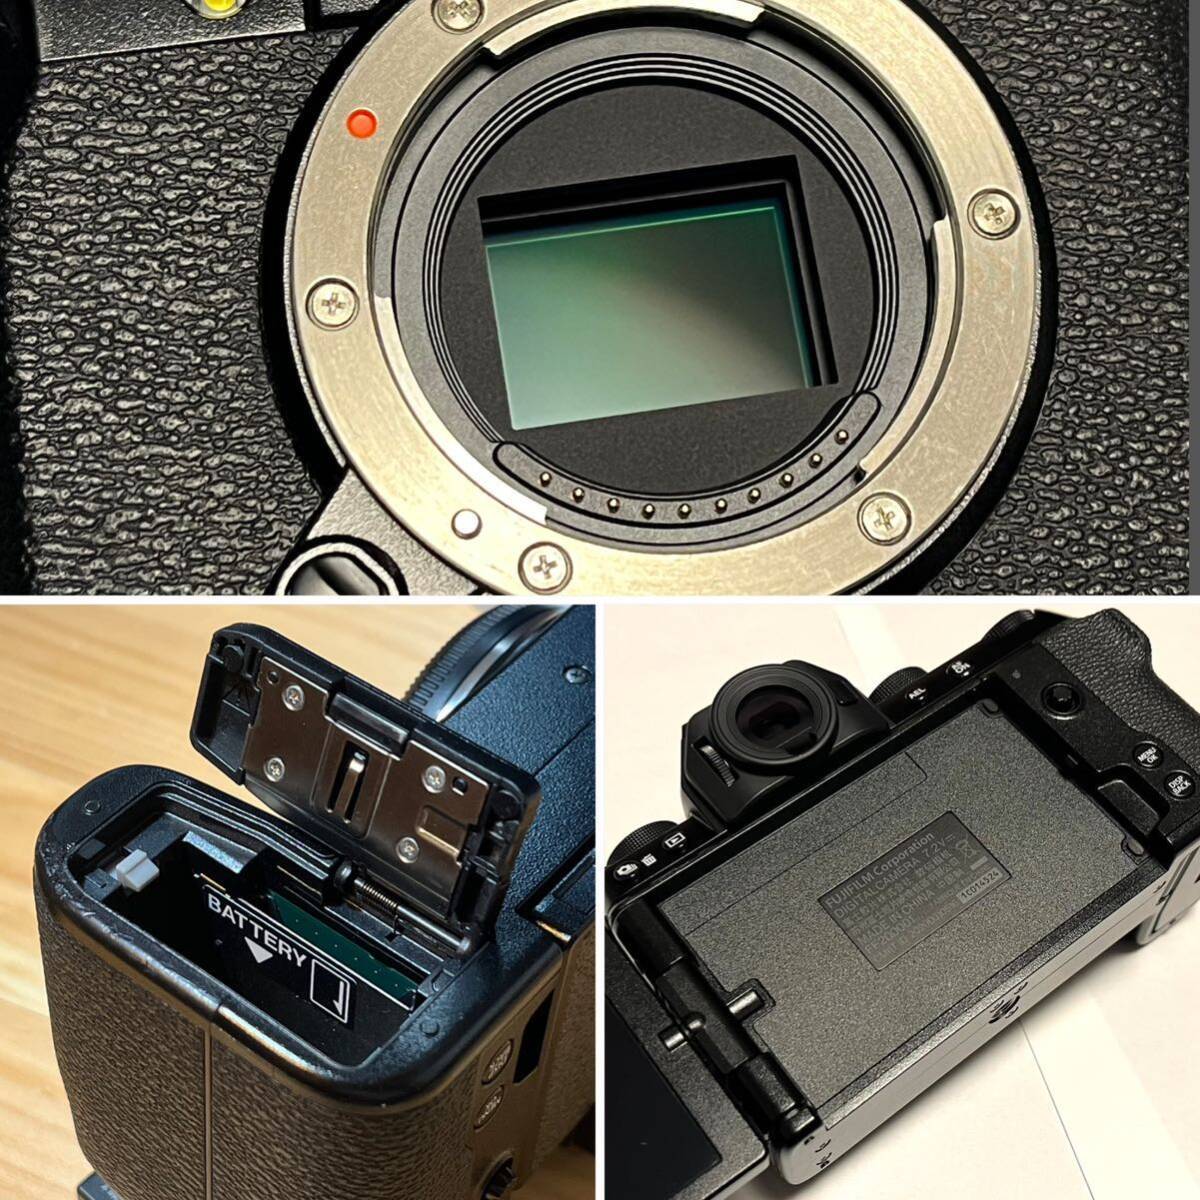 ( б/у исправно работающий товар )FUJIFILM X-S10 корпус + принадлежности большое количество ( аккумулятор 4 шт,SD карта, камера кейс )